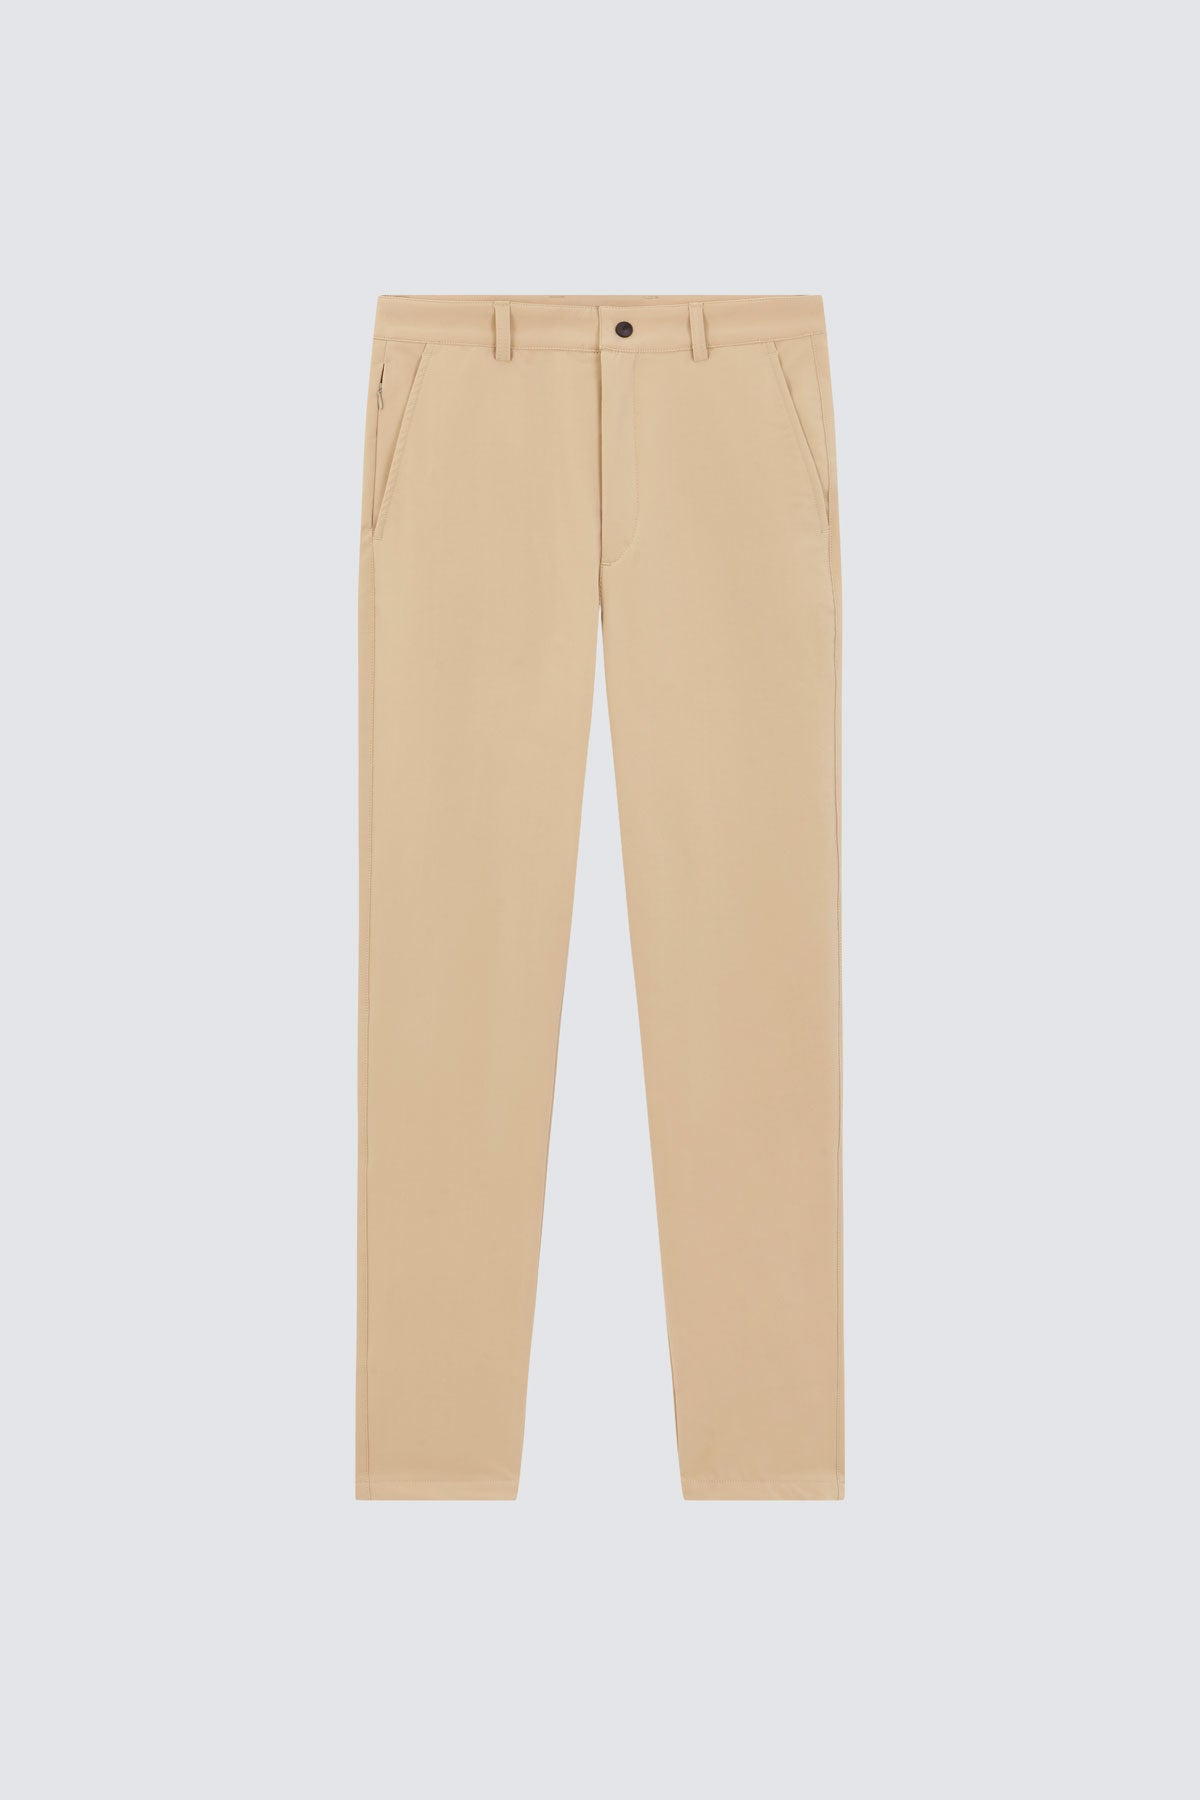 Pantalón para hombre beige: Pantalón chino slim beige para hombre con tecnología termorreguladora Coolmax. Foto prenda en plano